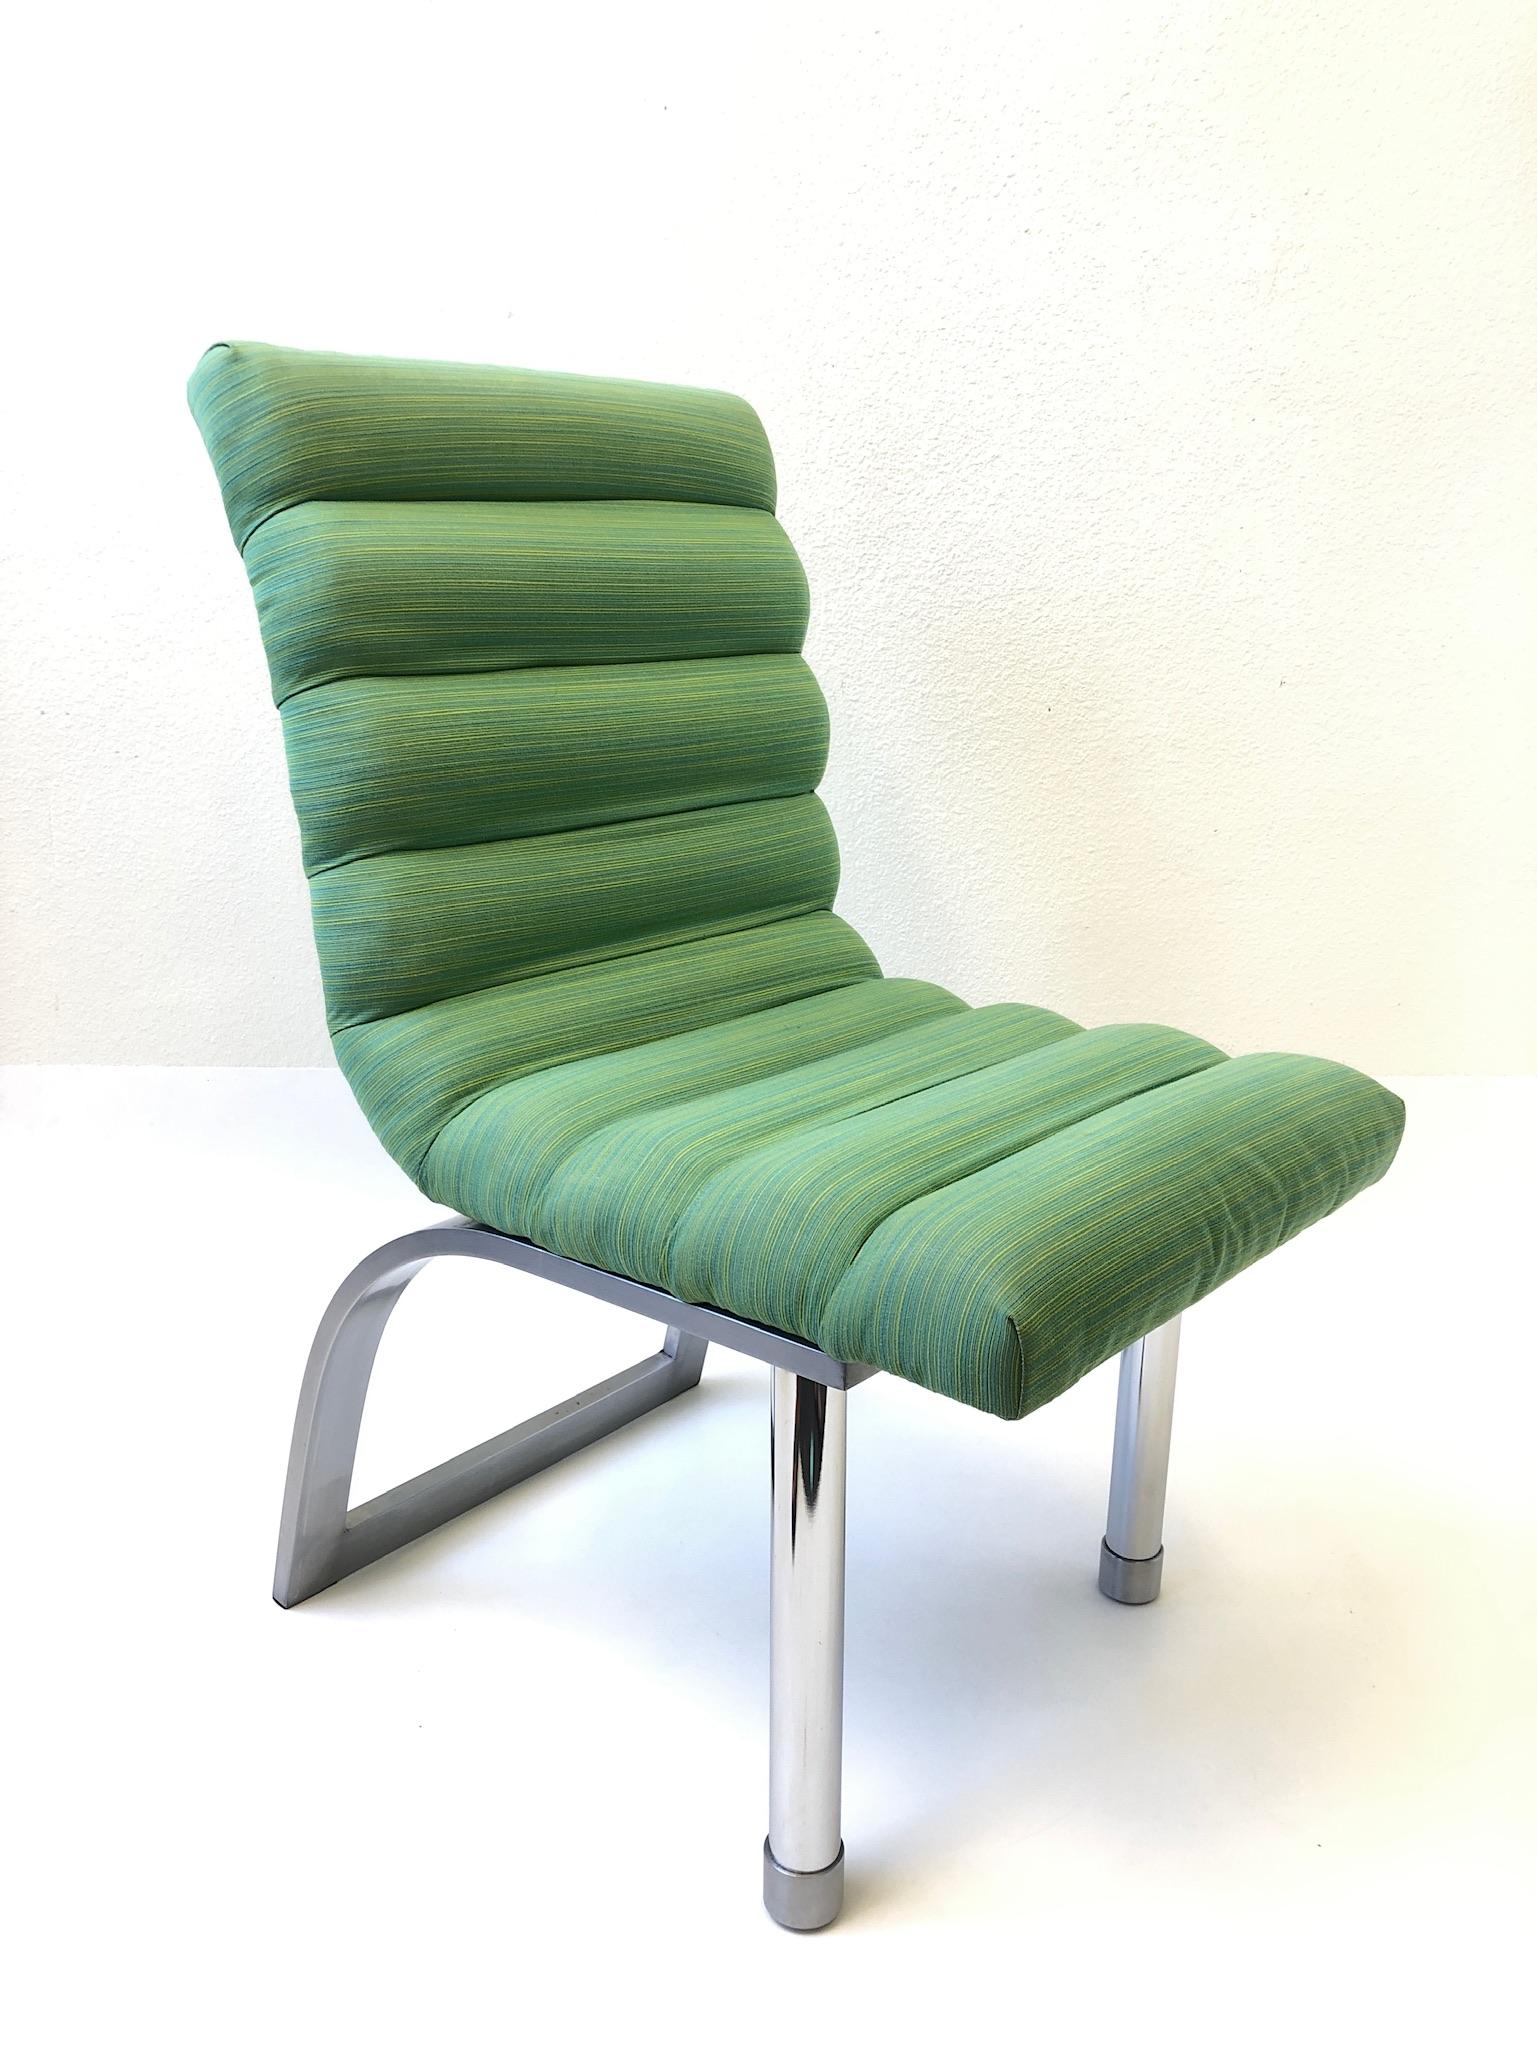 Un ensemble spectaculaire de six chaises de salle à manger 'Eclipse' conçues par Jay Spectre pour Century Furniture dans les années 1980. L'ensemble se compose de deux fauteuils et de quatre chaises sans accoudoirs. Les chaises sont fabriquées en